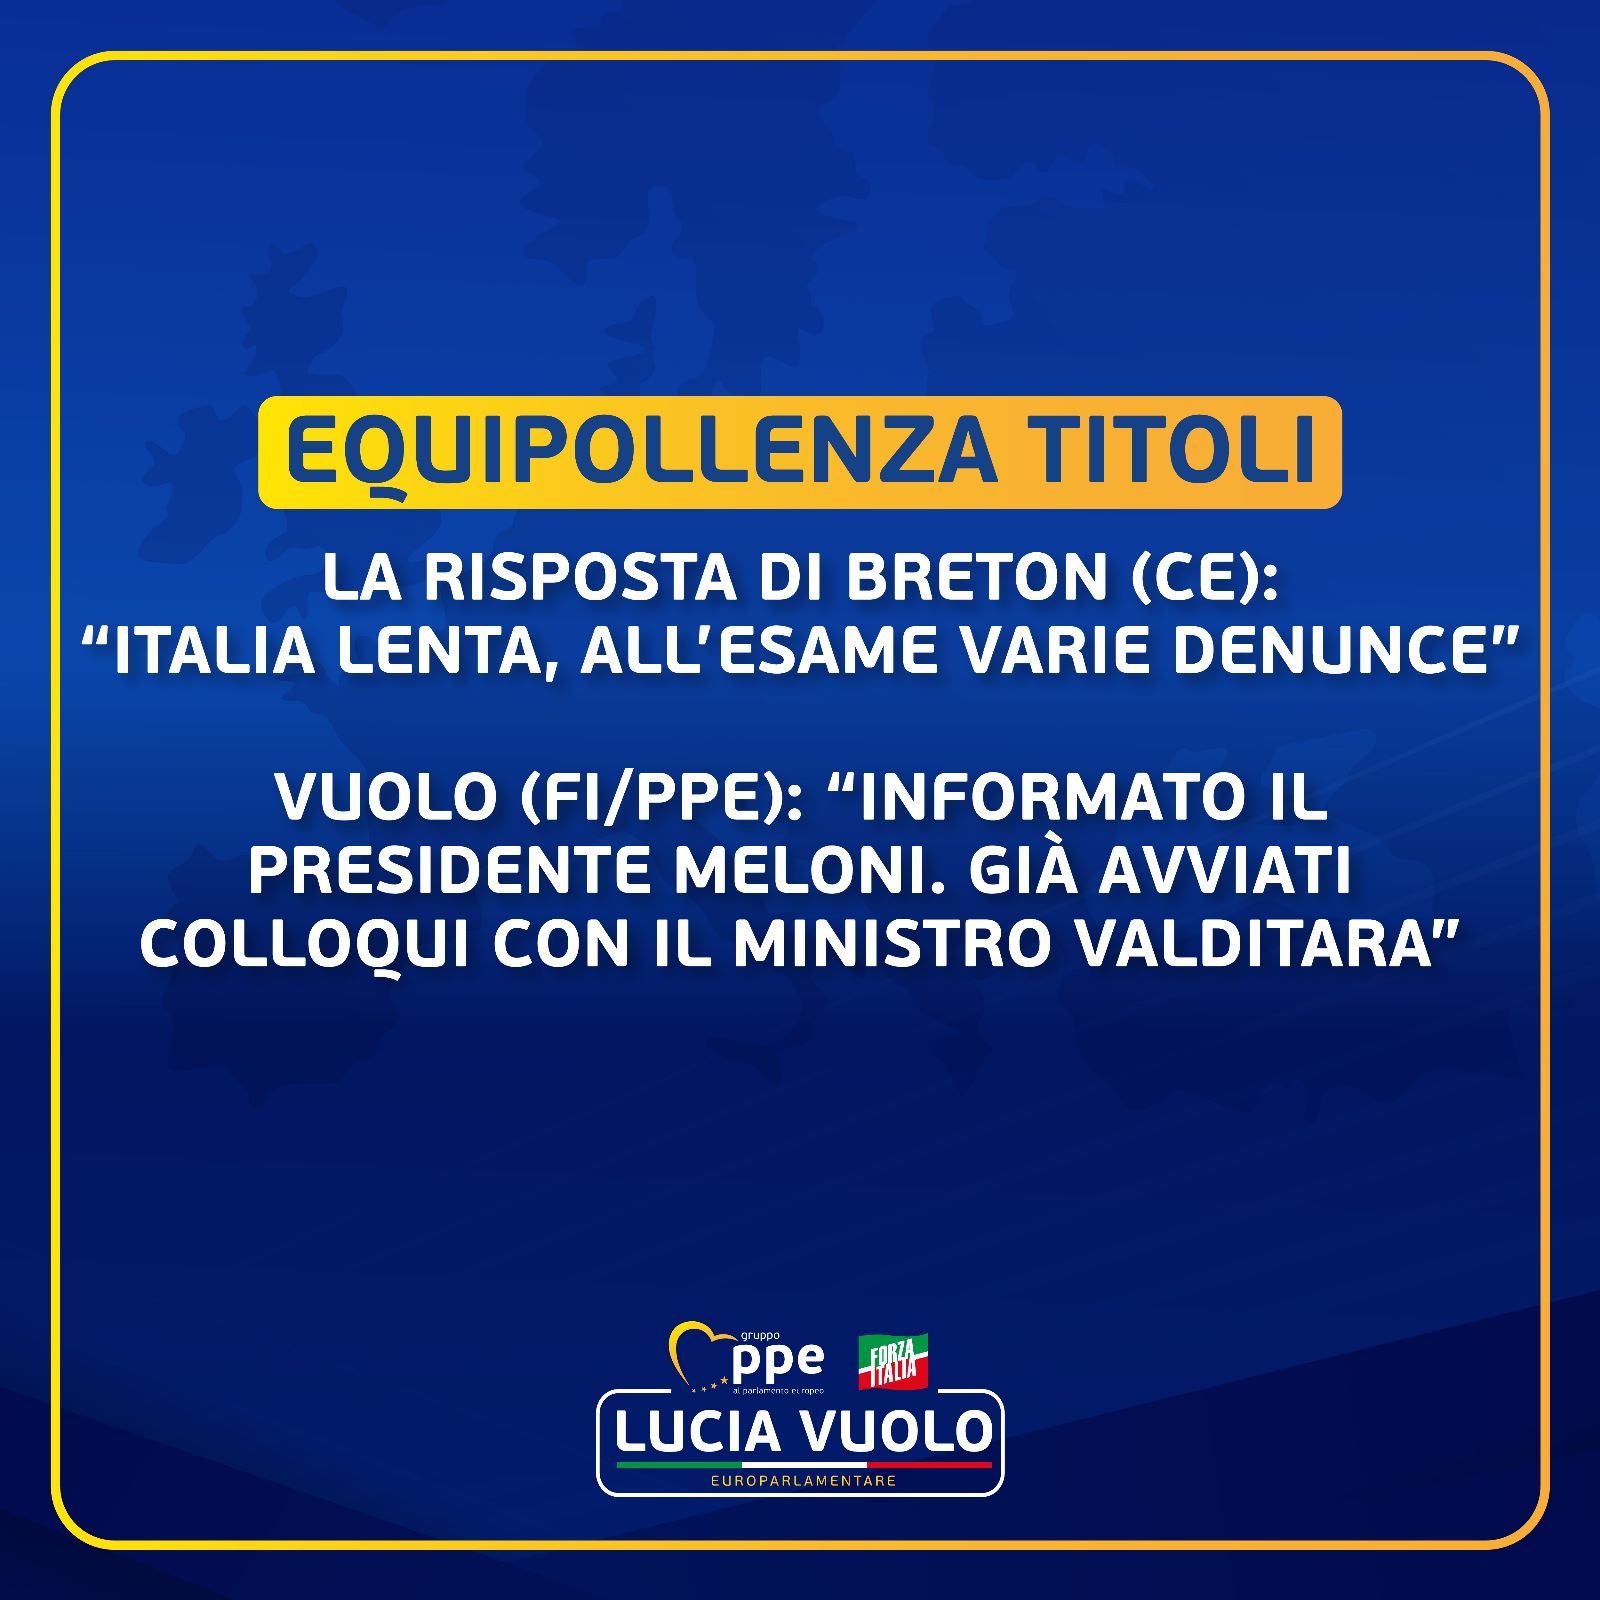 Equipollenza, la risposta di Breton (EC): “Italia lenta, all’esame varie denunce”. Vuolo (FI/PPE): “Informato il Presidente Meloni. Già avviati colloqui con il Ministro Valditara”.